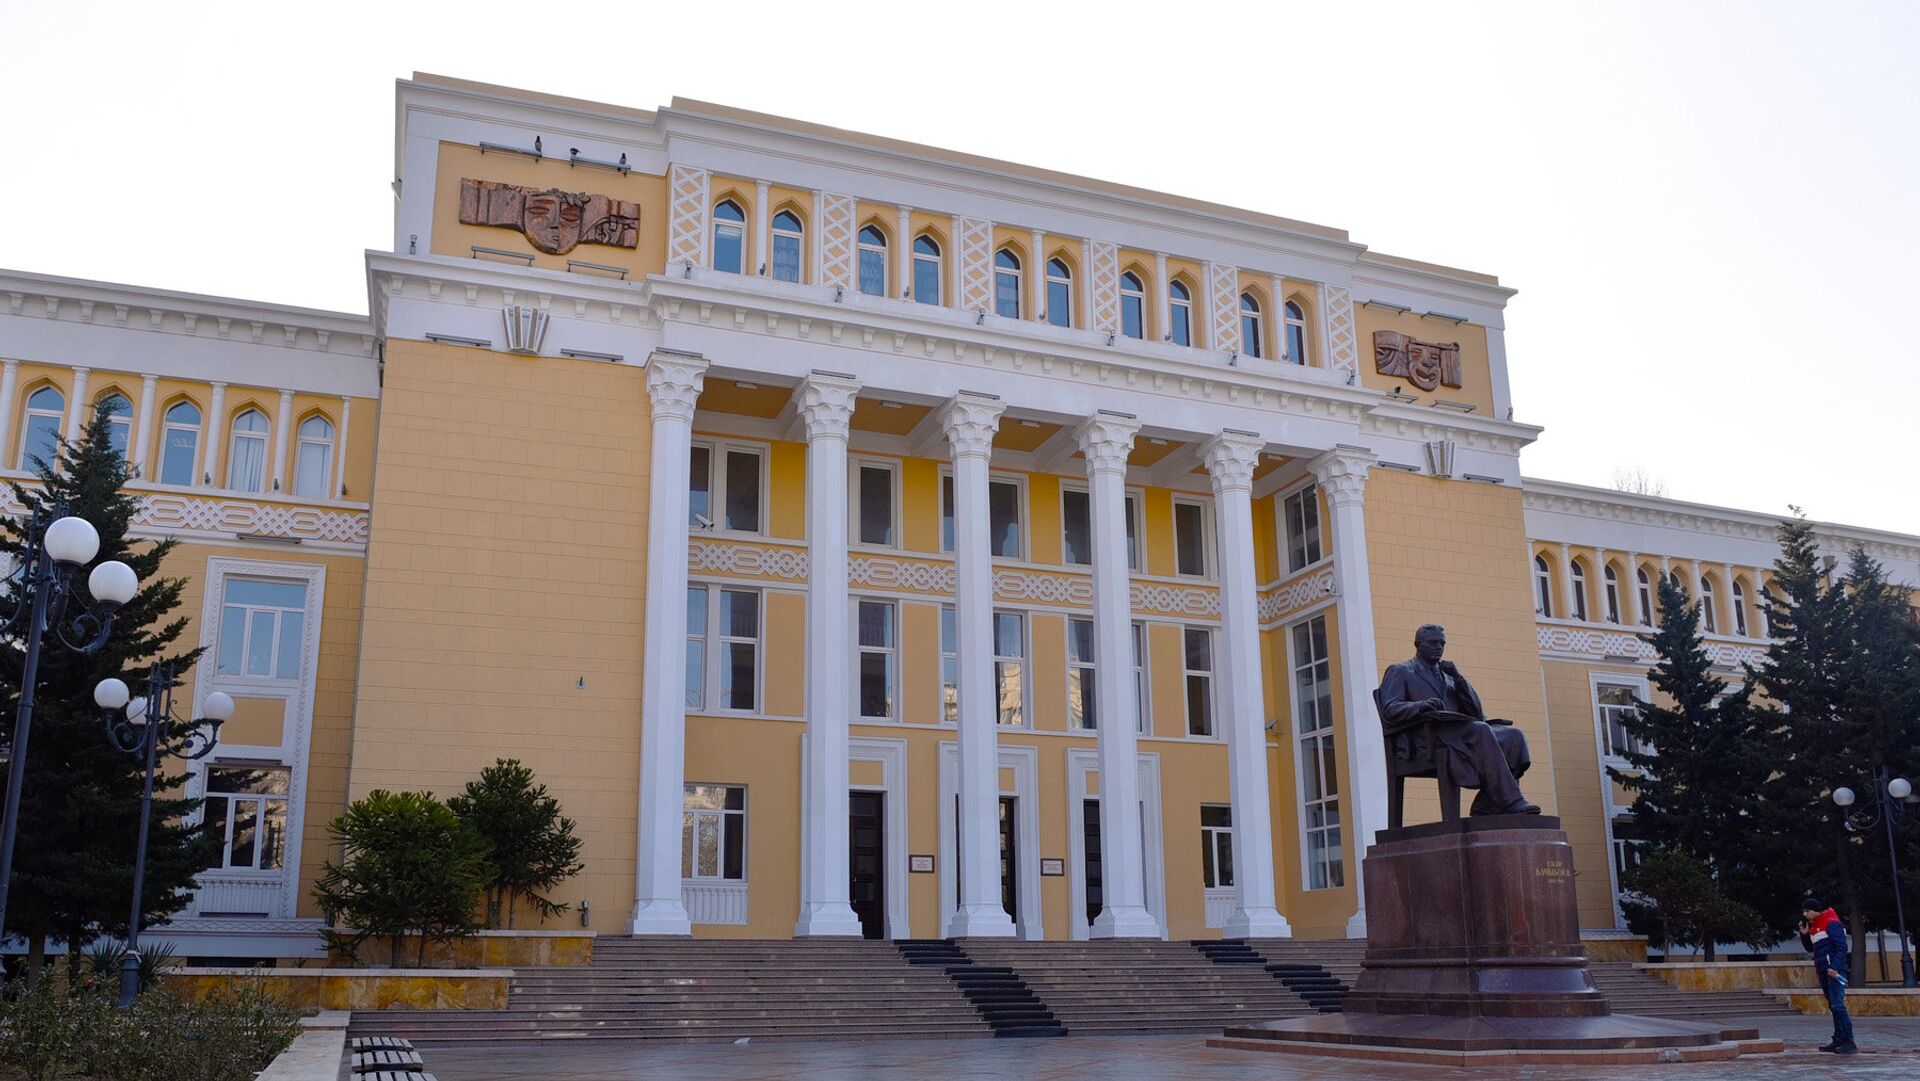 Бакинская музыкальная академия имени Узеира Гаджибейли  - Sputnik Азербайджан, 1920, 26.05.2021